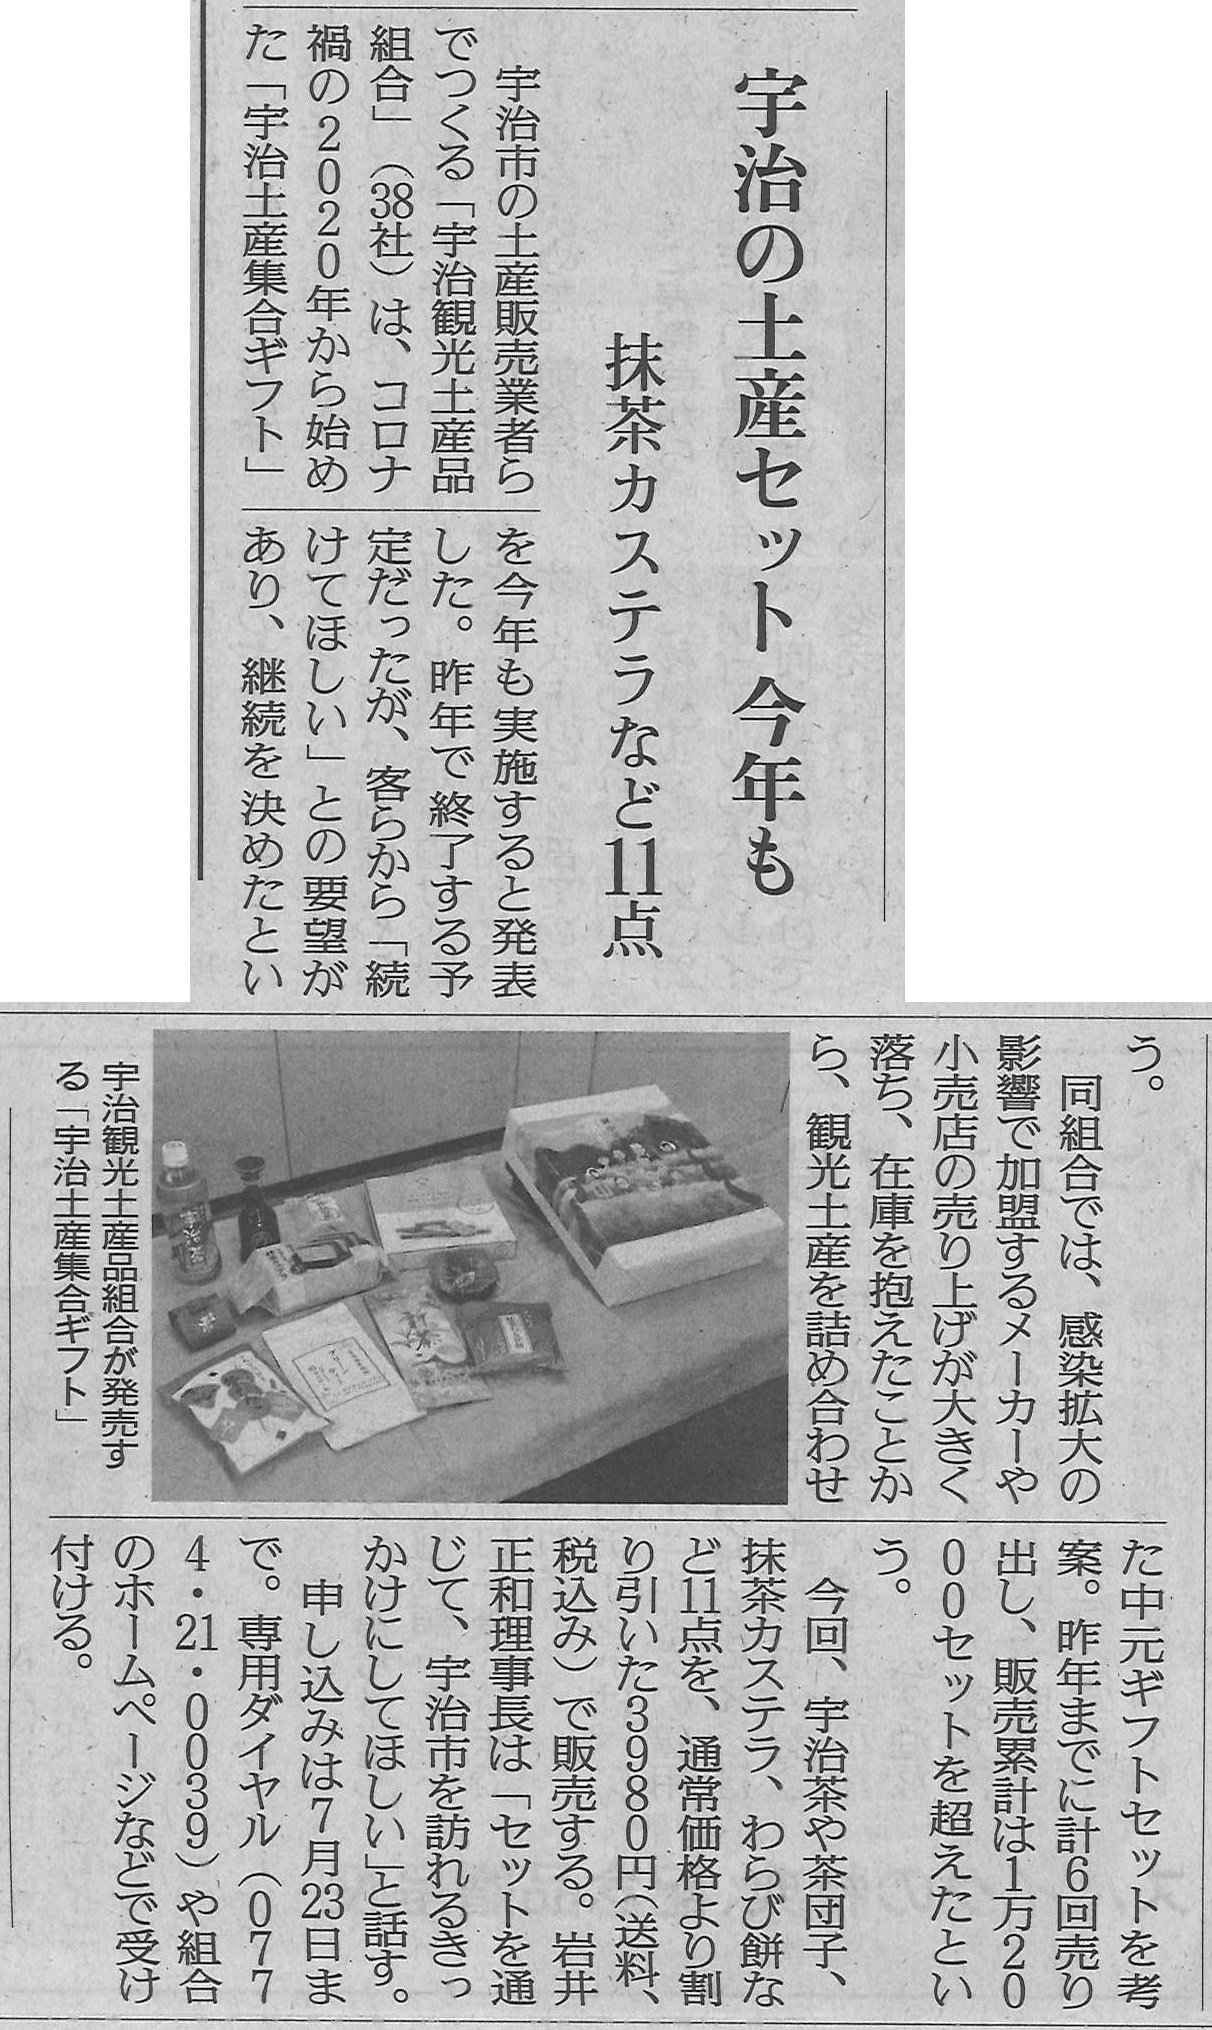 6月24日 読売新聞にて宇治観光土産品組合による第7回目のお中元ギフトが紹介